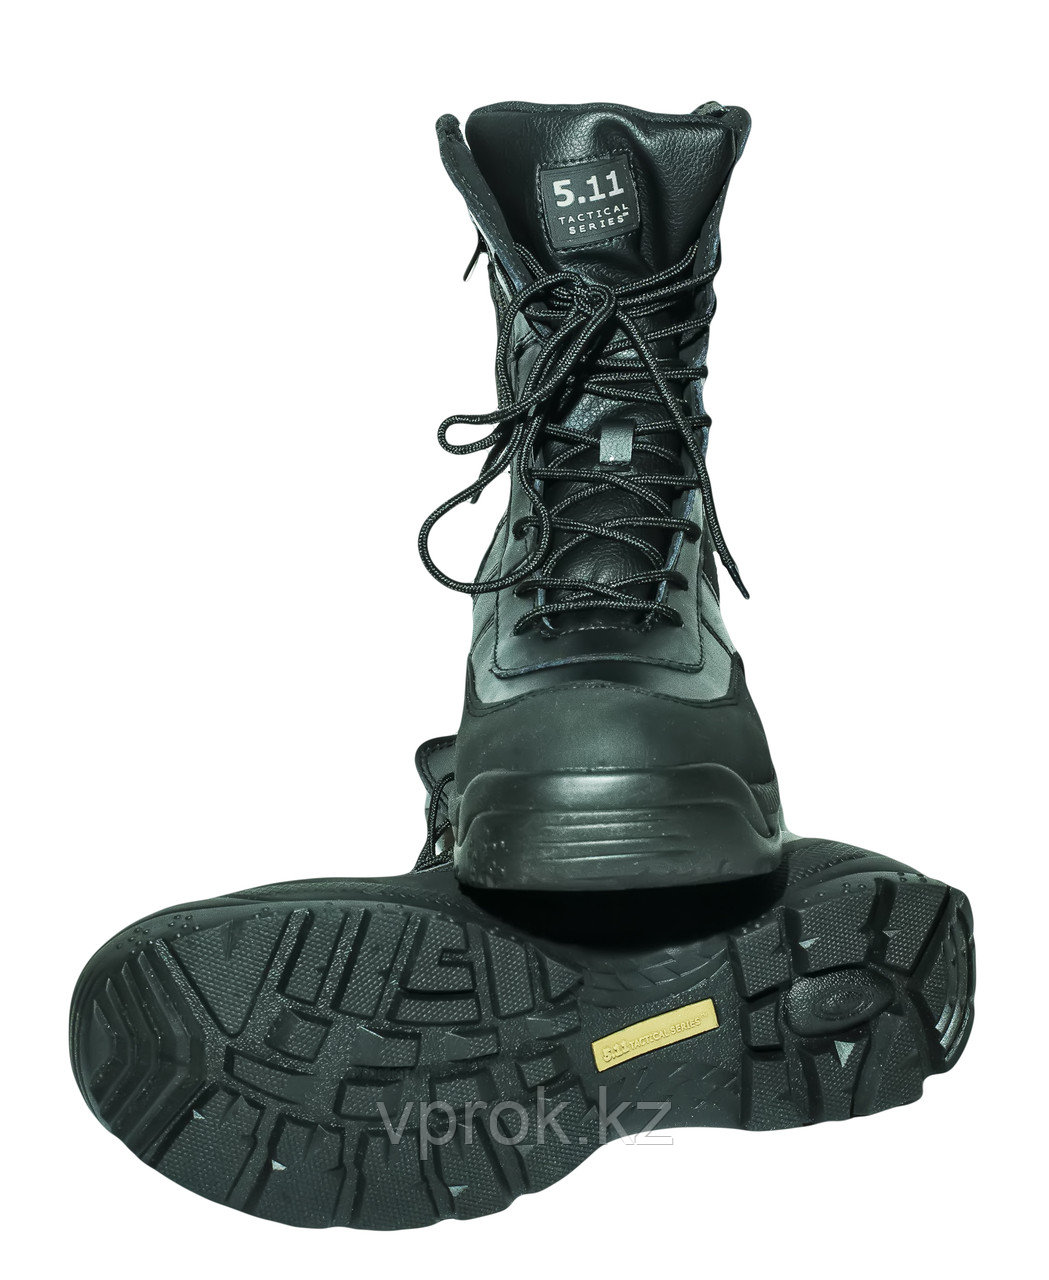 Тактические ботинки 5.11 (размеры 42-45) чер